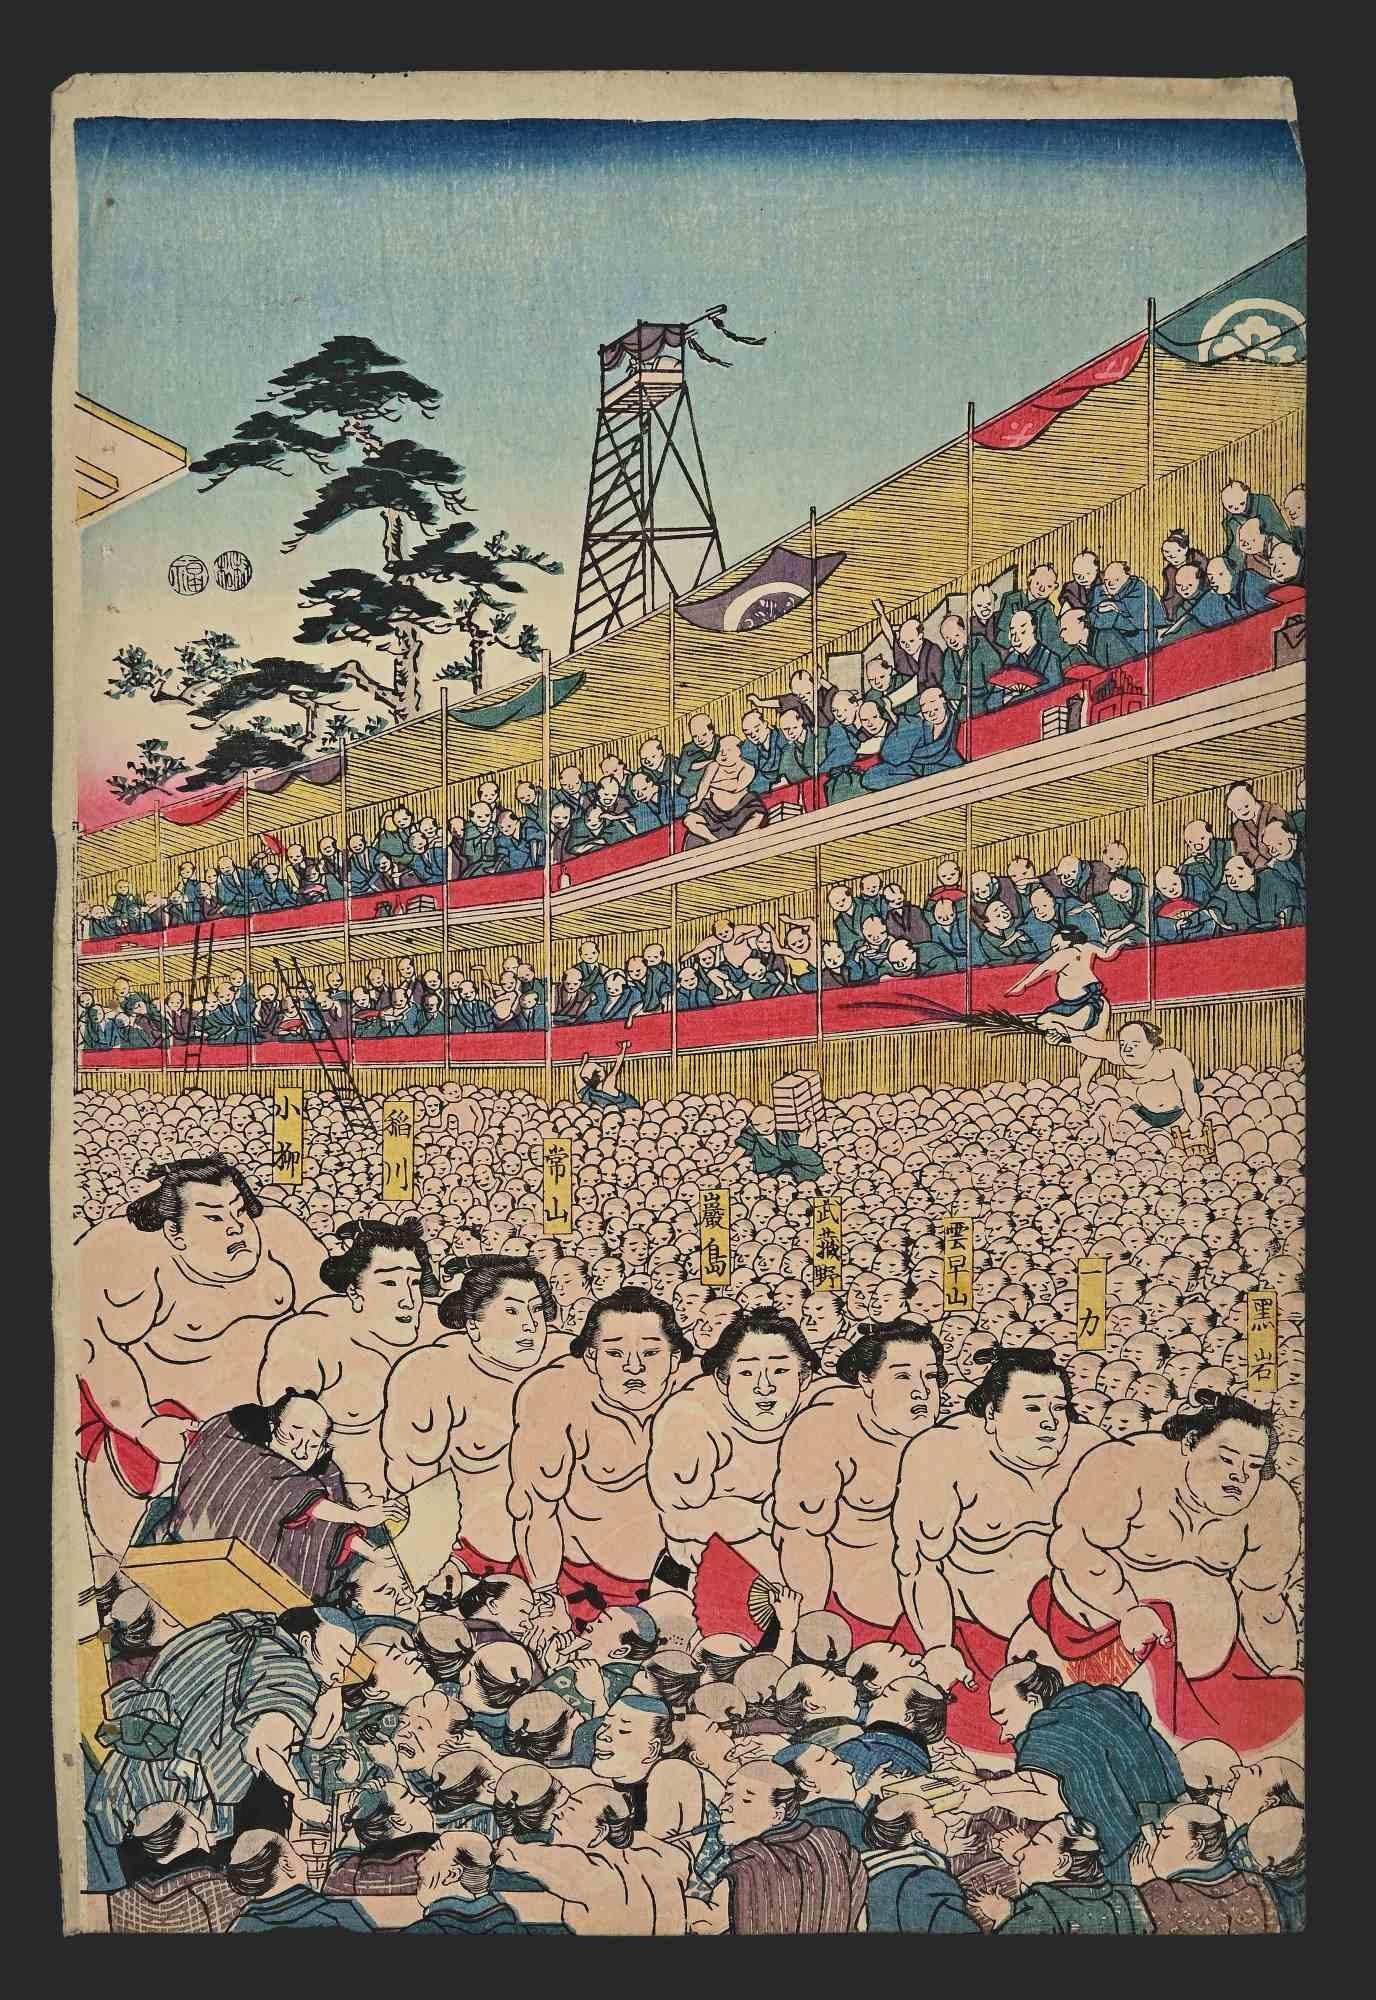 Utagawa Kunisada (Toyokuni III) Figurative Print - Sumo Tournament - Woodblock Print by Utagawa Kunisada - Mid-19th Century